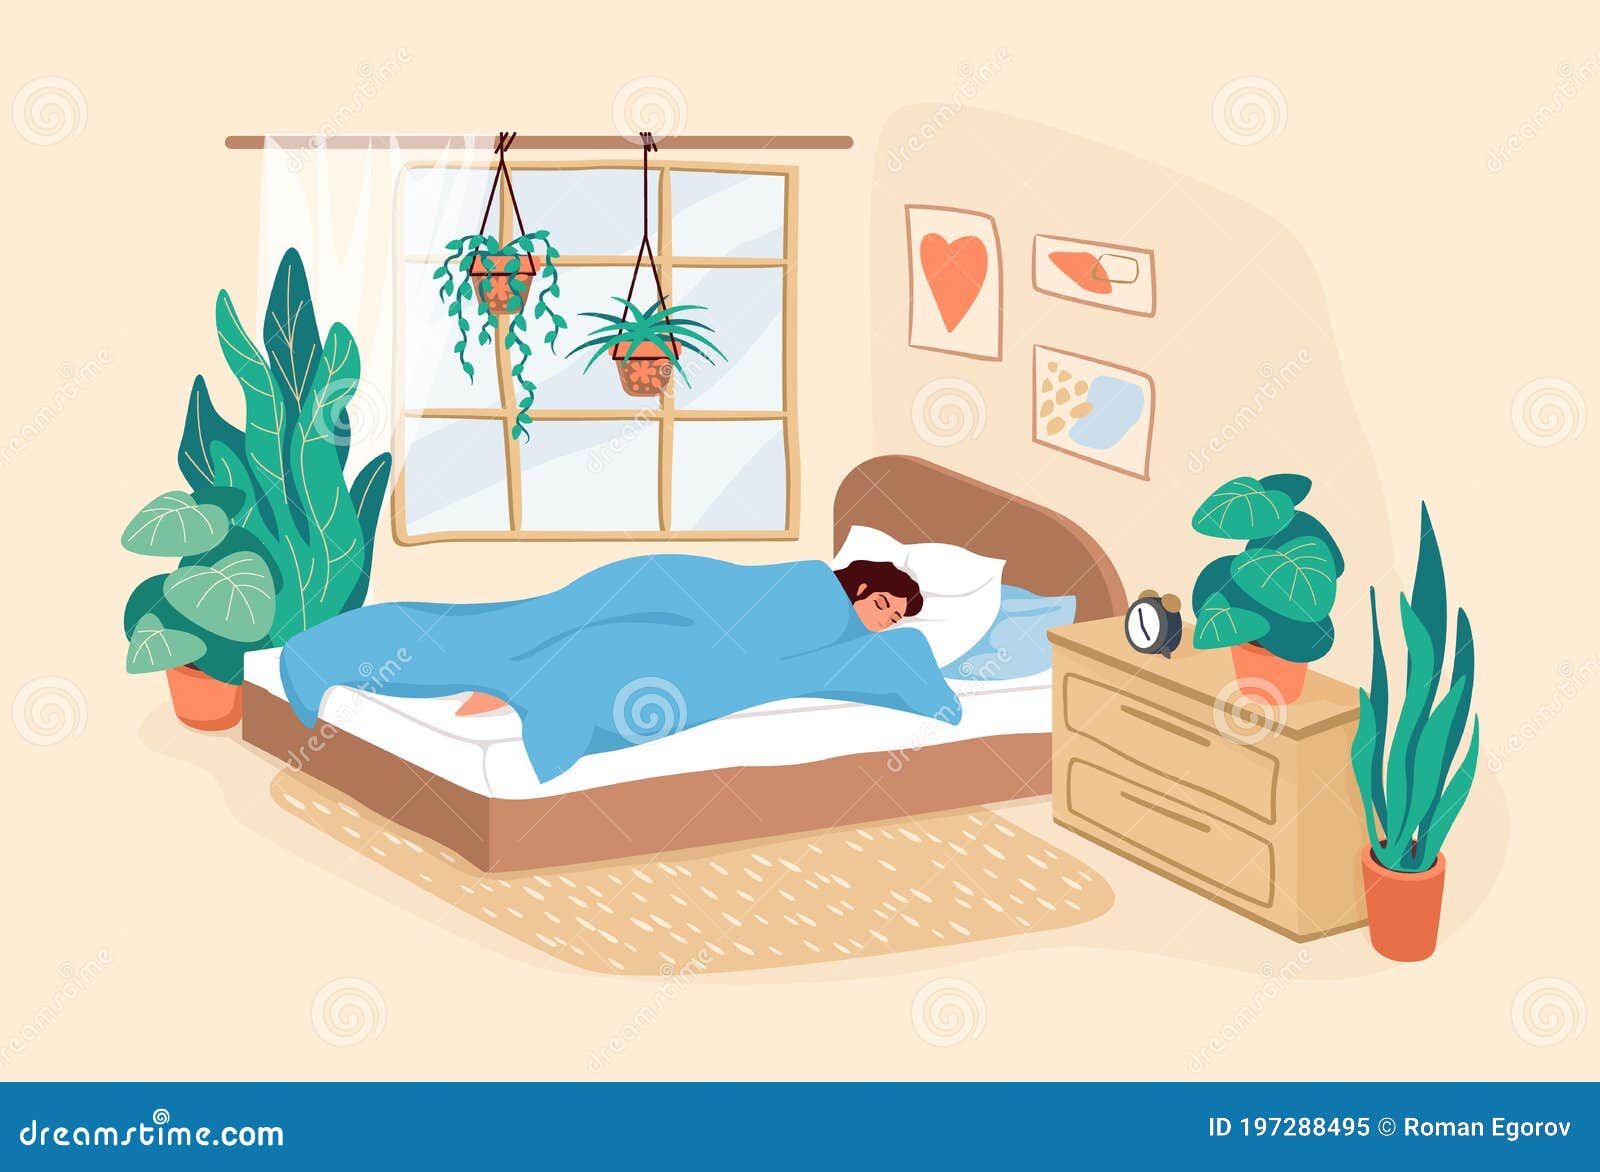 Sleeping Woman. Cartoon Adult Girl Resting In Bedroom ...
 Girl Sleeping Cartoon